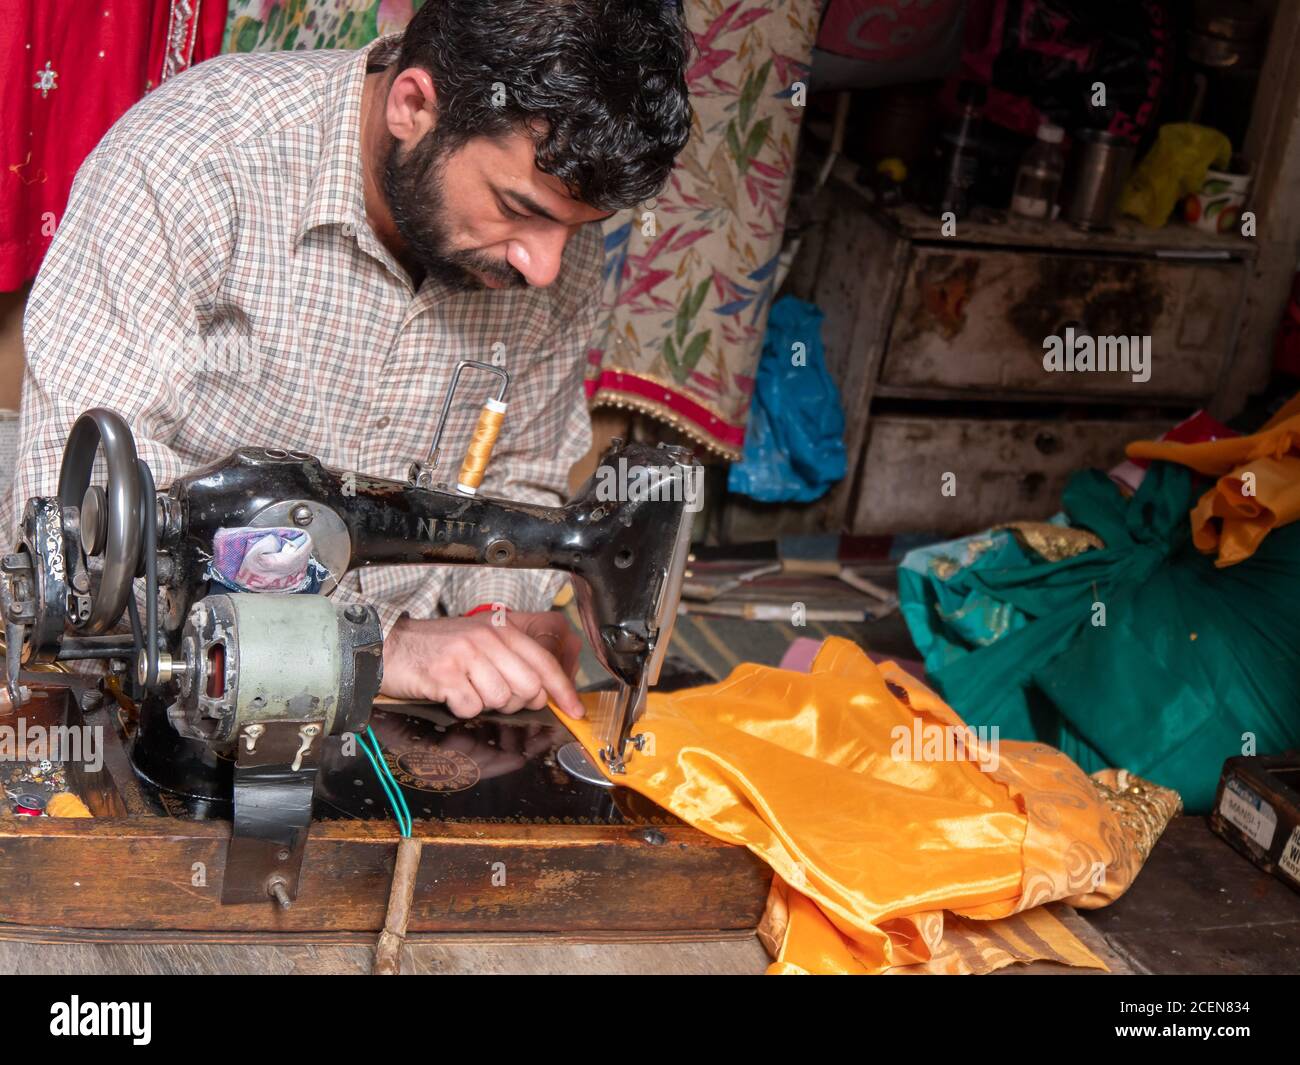 AMRITSAR, INDE - 18 MARS 2019 : gros plan d'un couturier qui fabrique un vêtement avec une machine à coudre dans son atelier à amritsar Banque D'Images